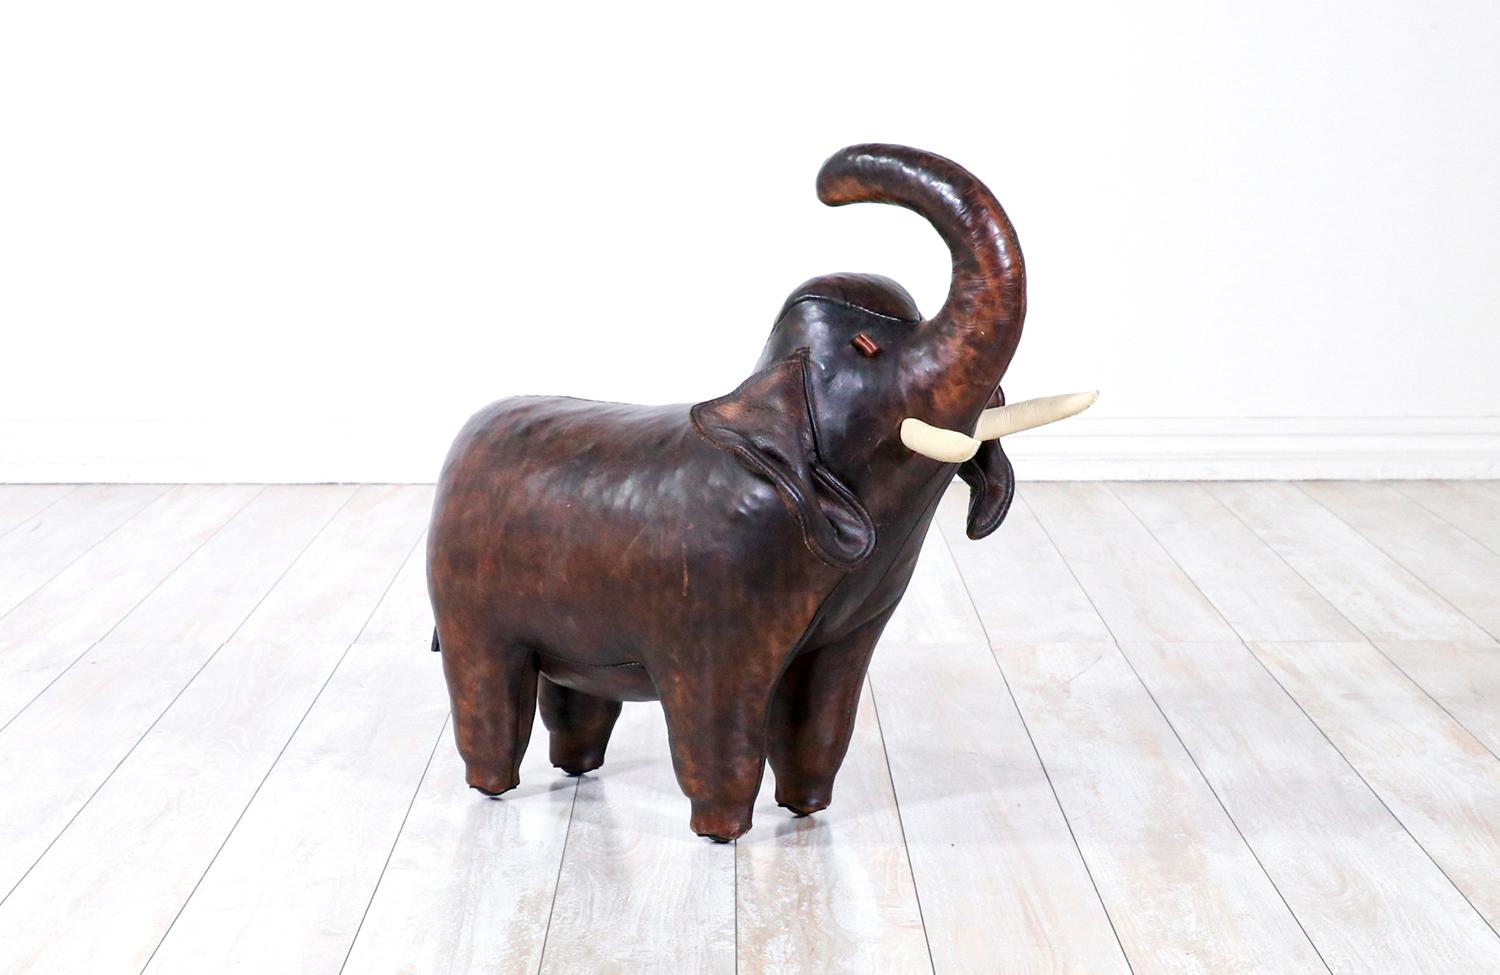 Vintage Omersa éléphant en cuir pour abercrombie et fitch.